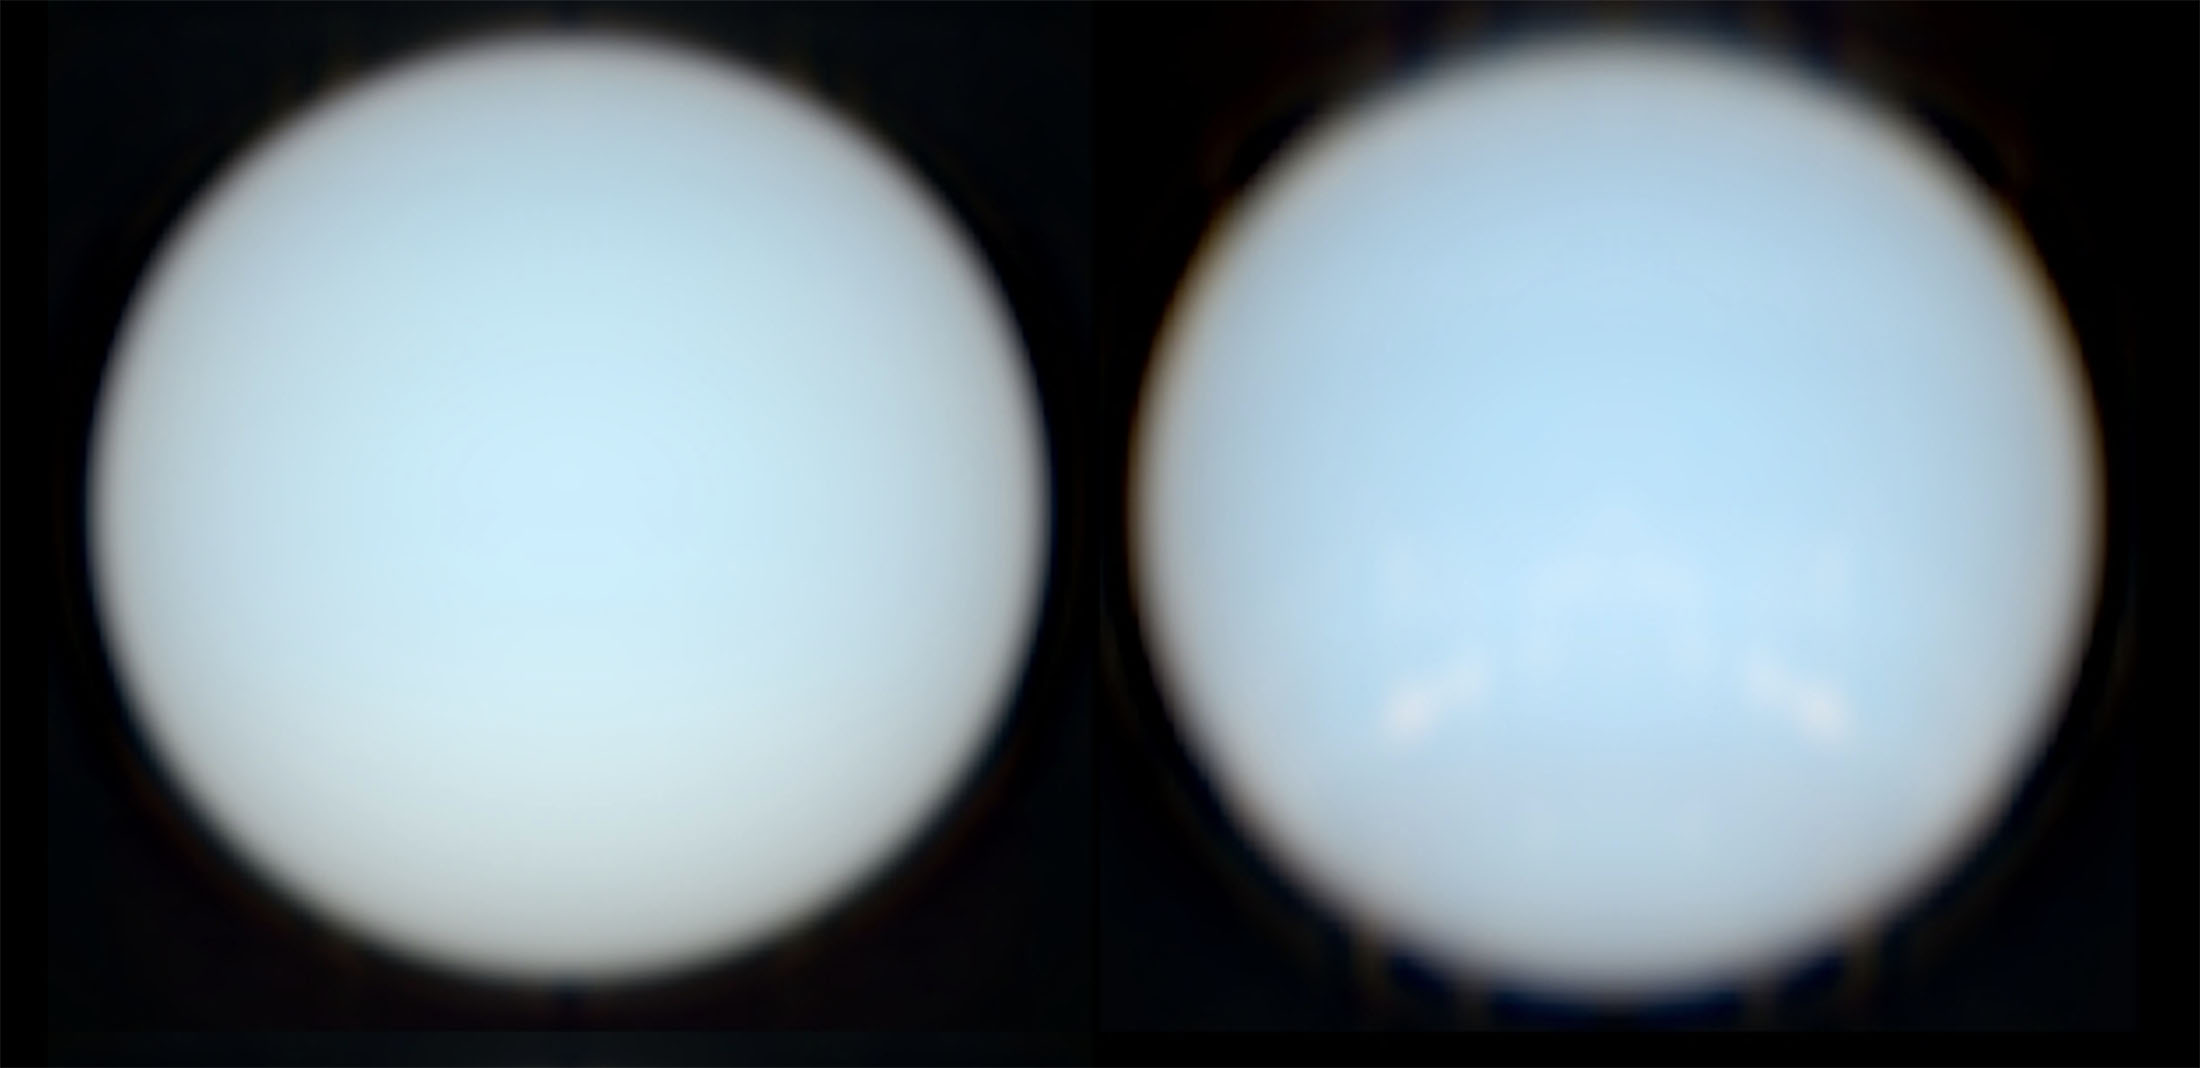 Les vraies couleurs des planètes Uranus et Neptune. Ces images ont été réalisées à partir des données des spectrographes d’Hubble (STIS) et du VLT (Muse). © Patrick Irwin, Université d'Oxford